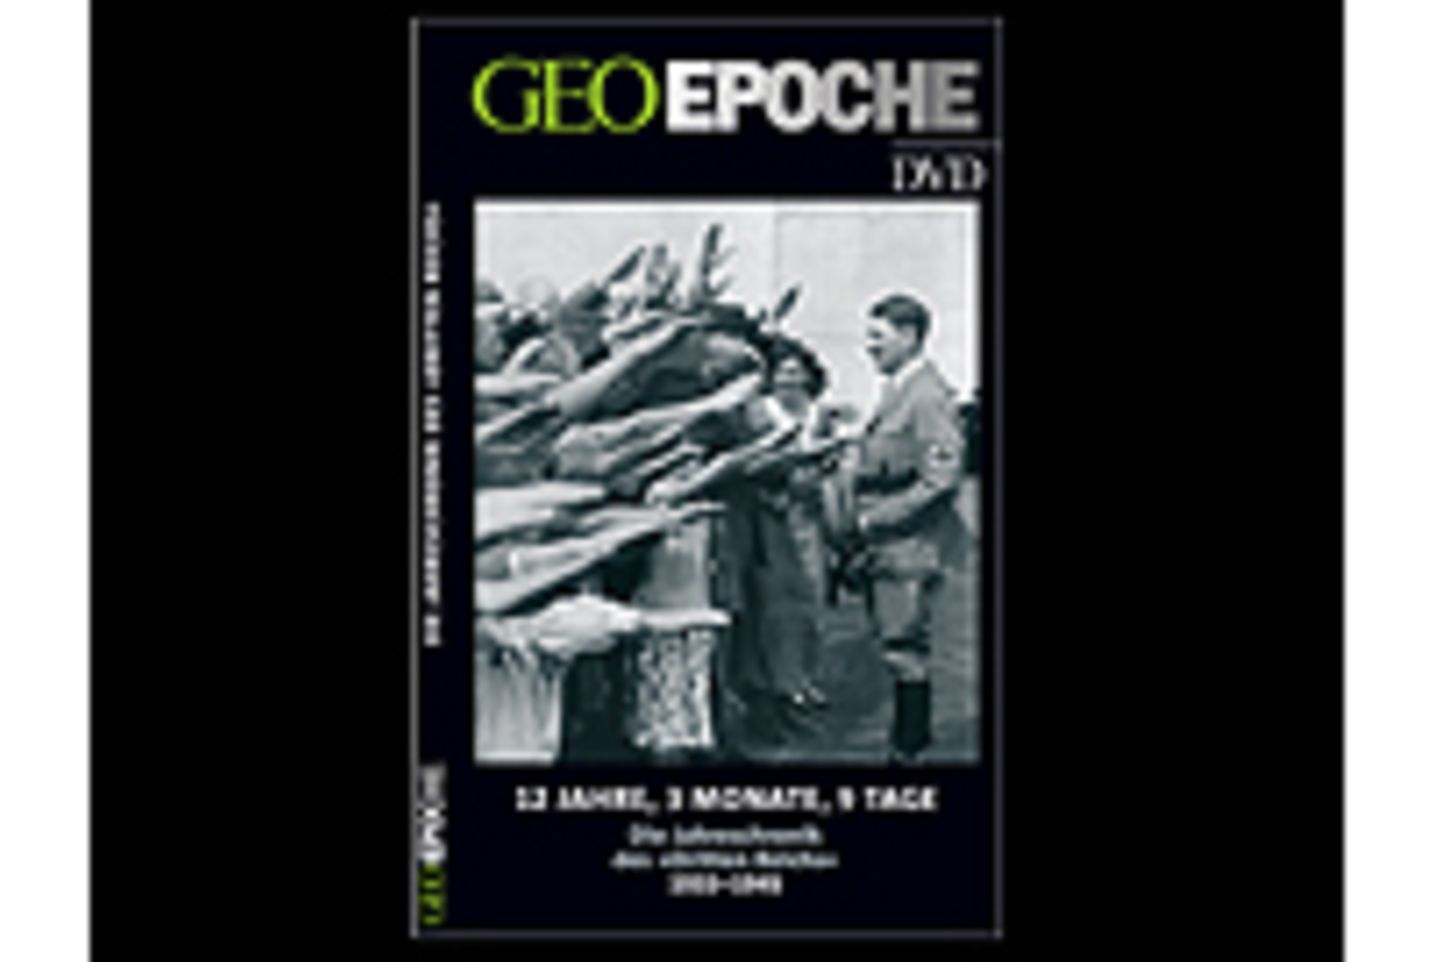 1937-1939 GEO Epoche Deutschland unter dem Hakenkreuz 2 